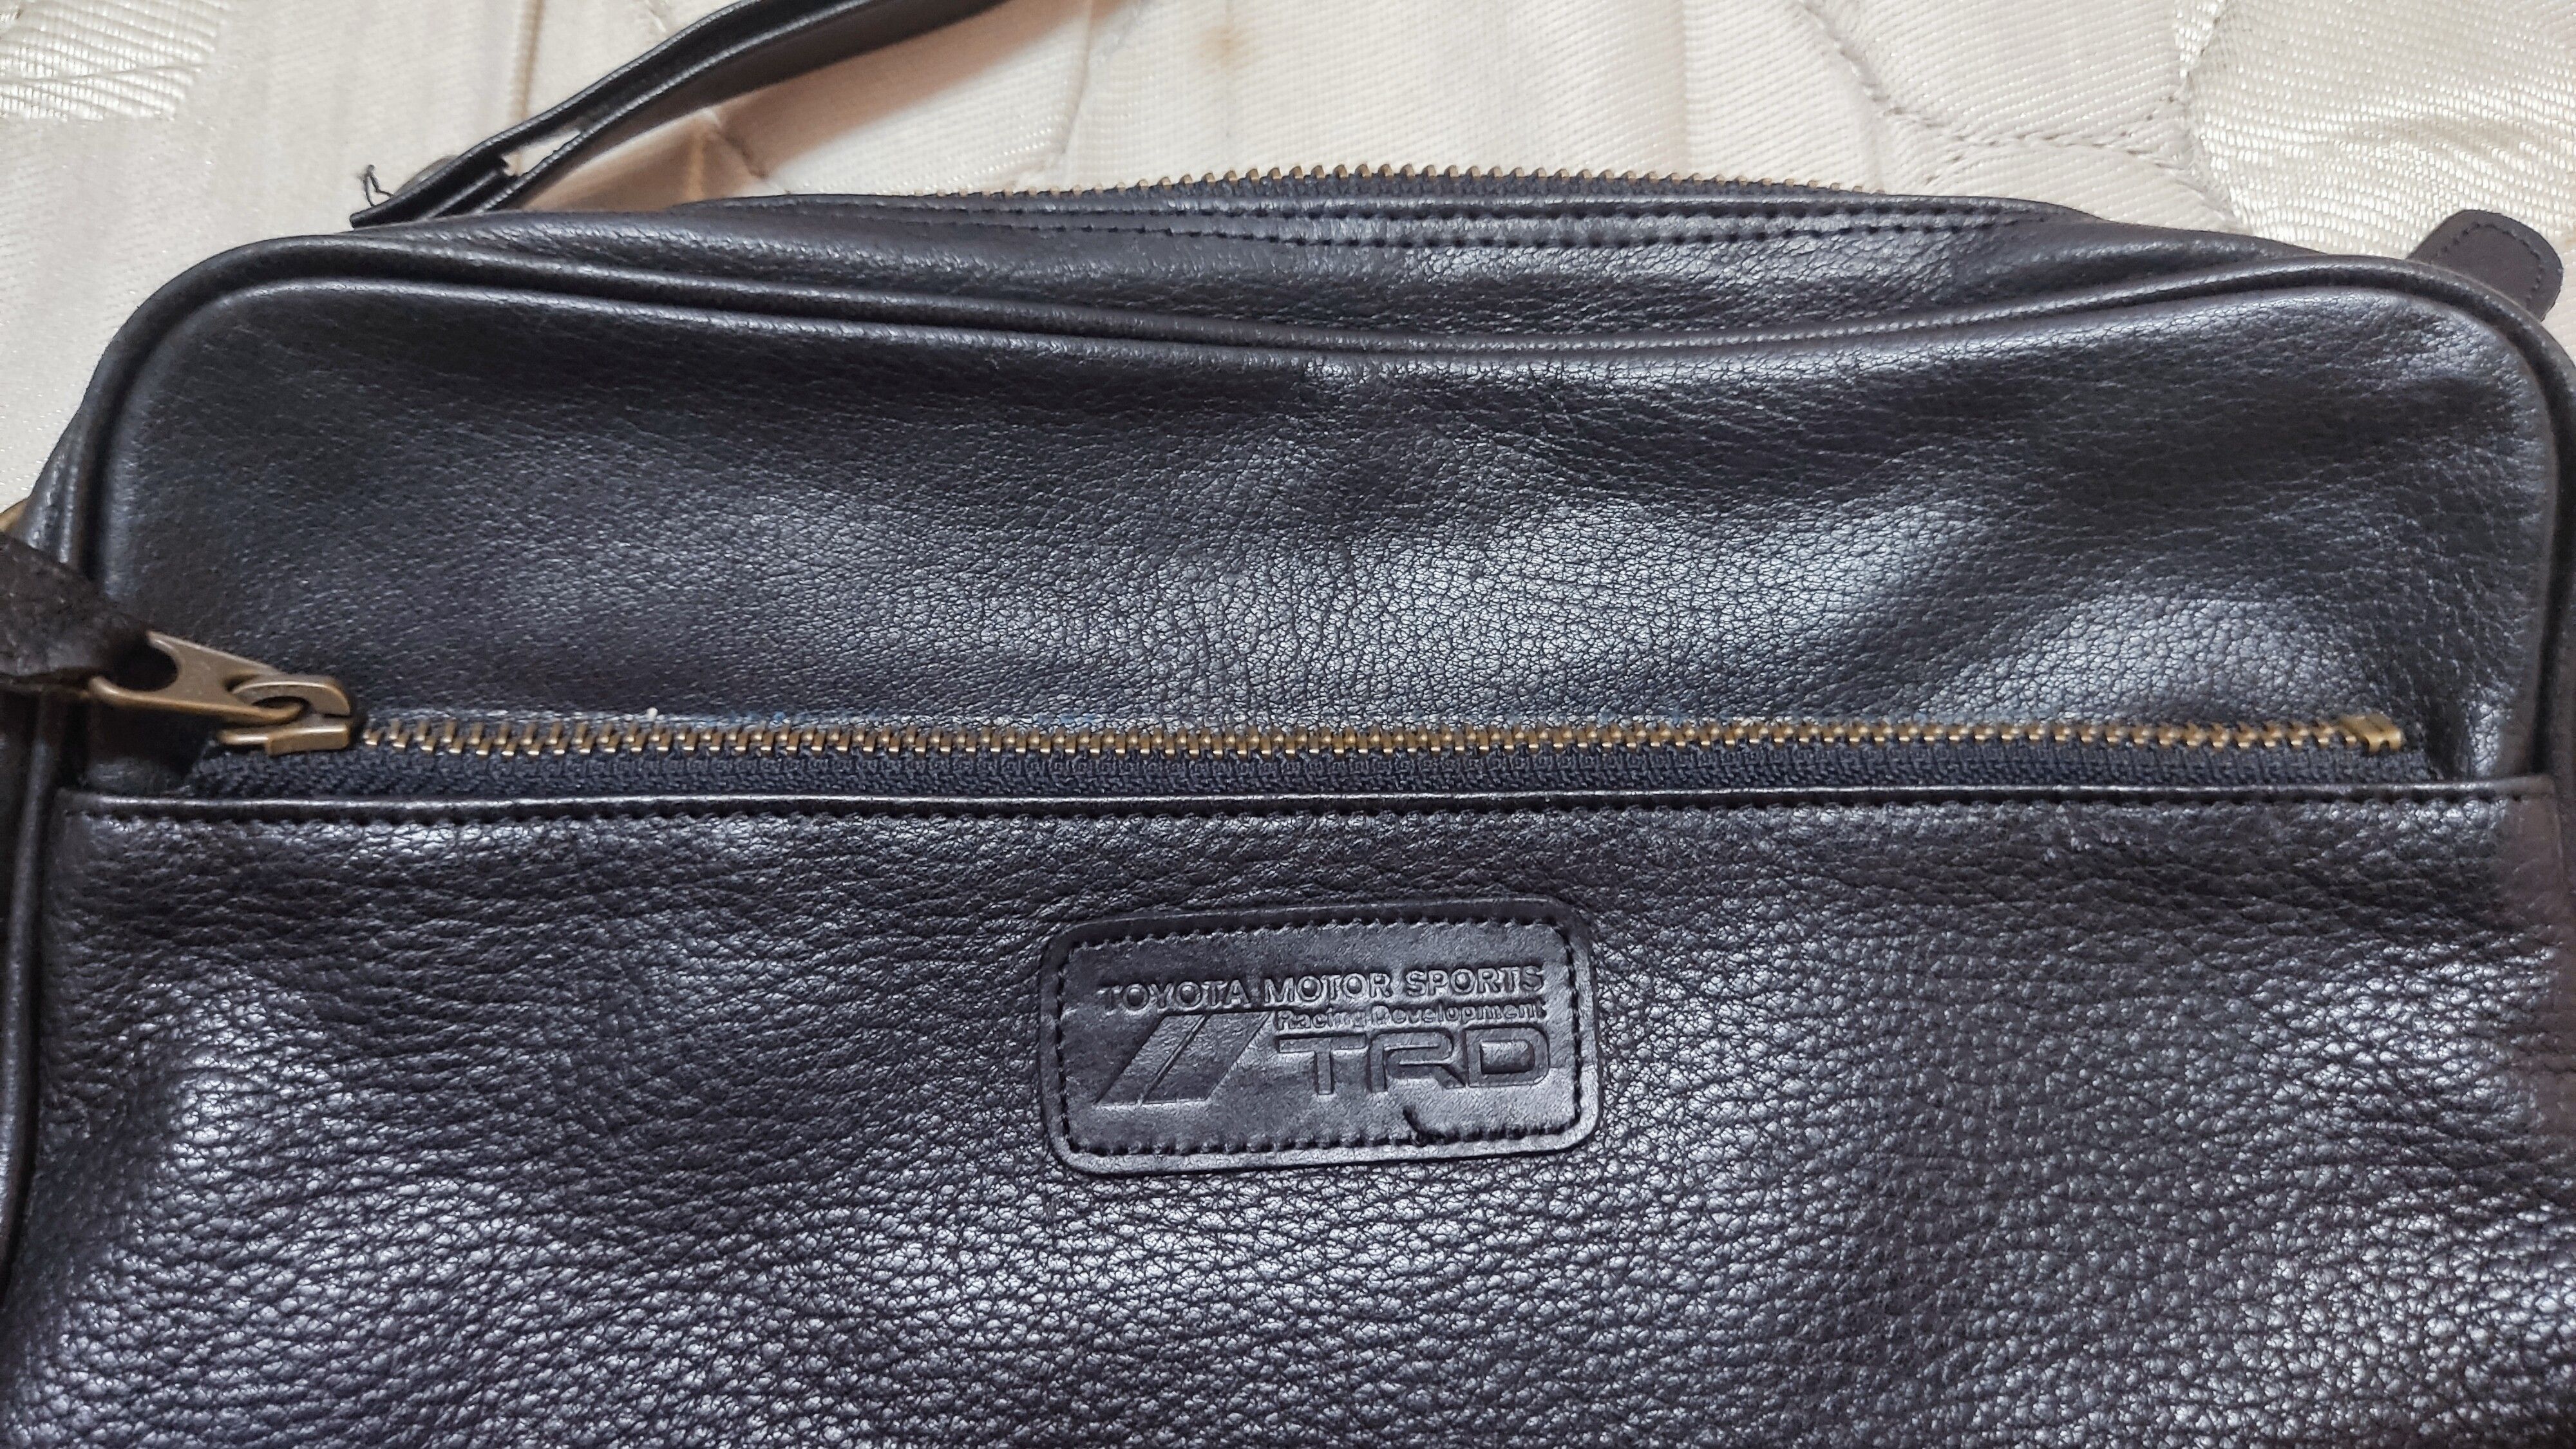 Vintage TRD Clutch Bag | Grailed